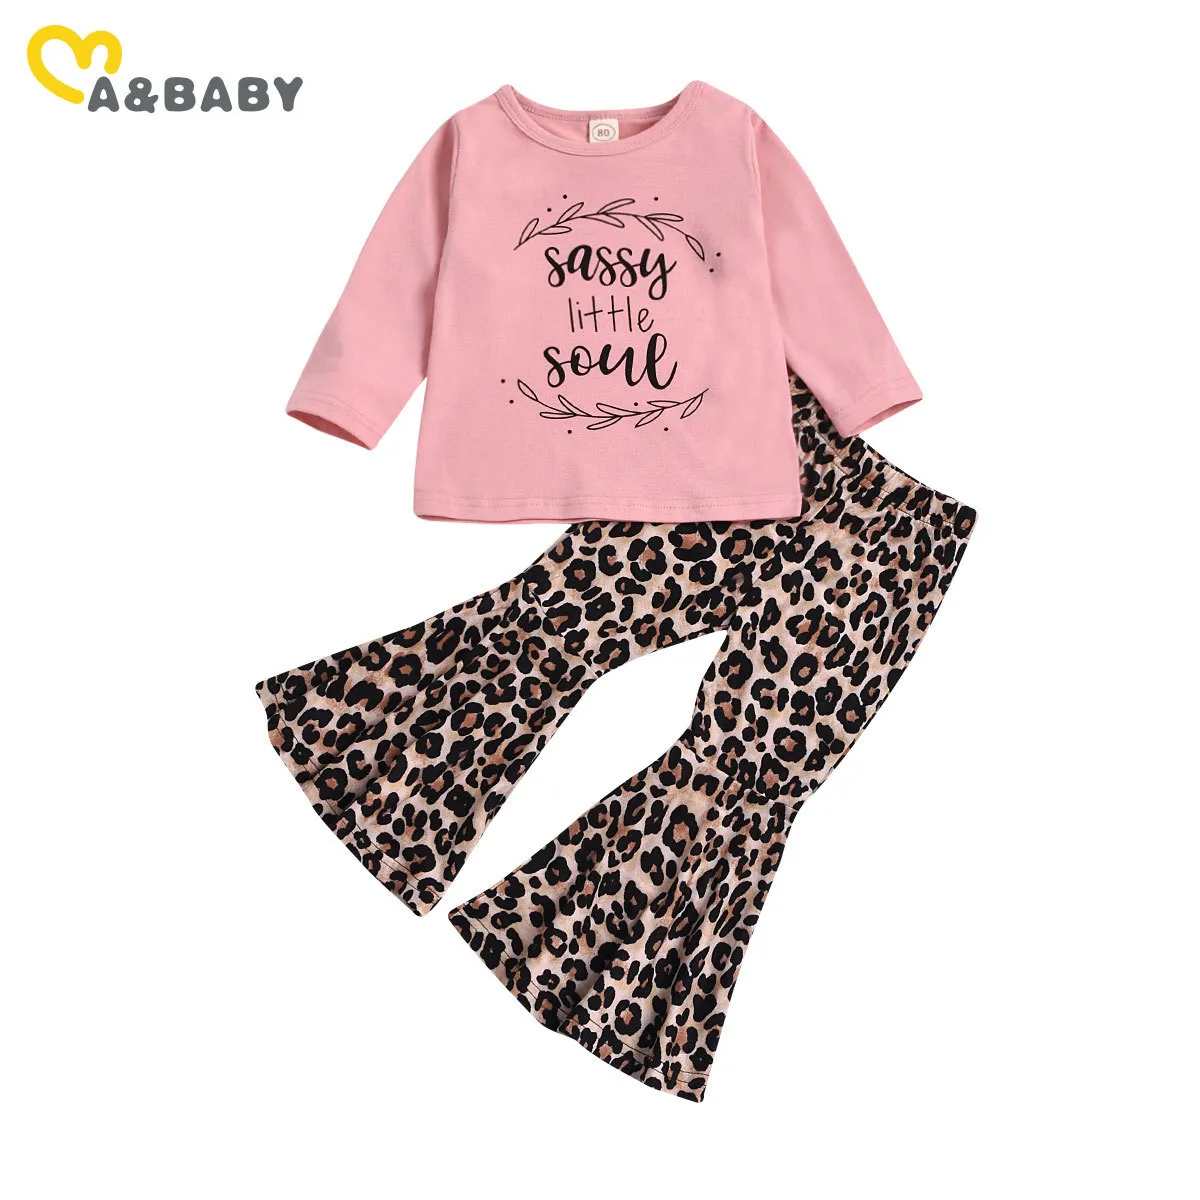 6M-3Y Herbst Frühling Kleinkind Kind Baby Mädchen Kleidung Set Brief Langarm Tops Flare Hosen Leopard Hosen Outfits 210515